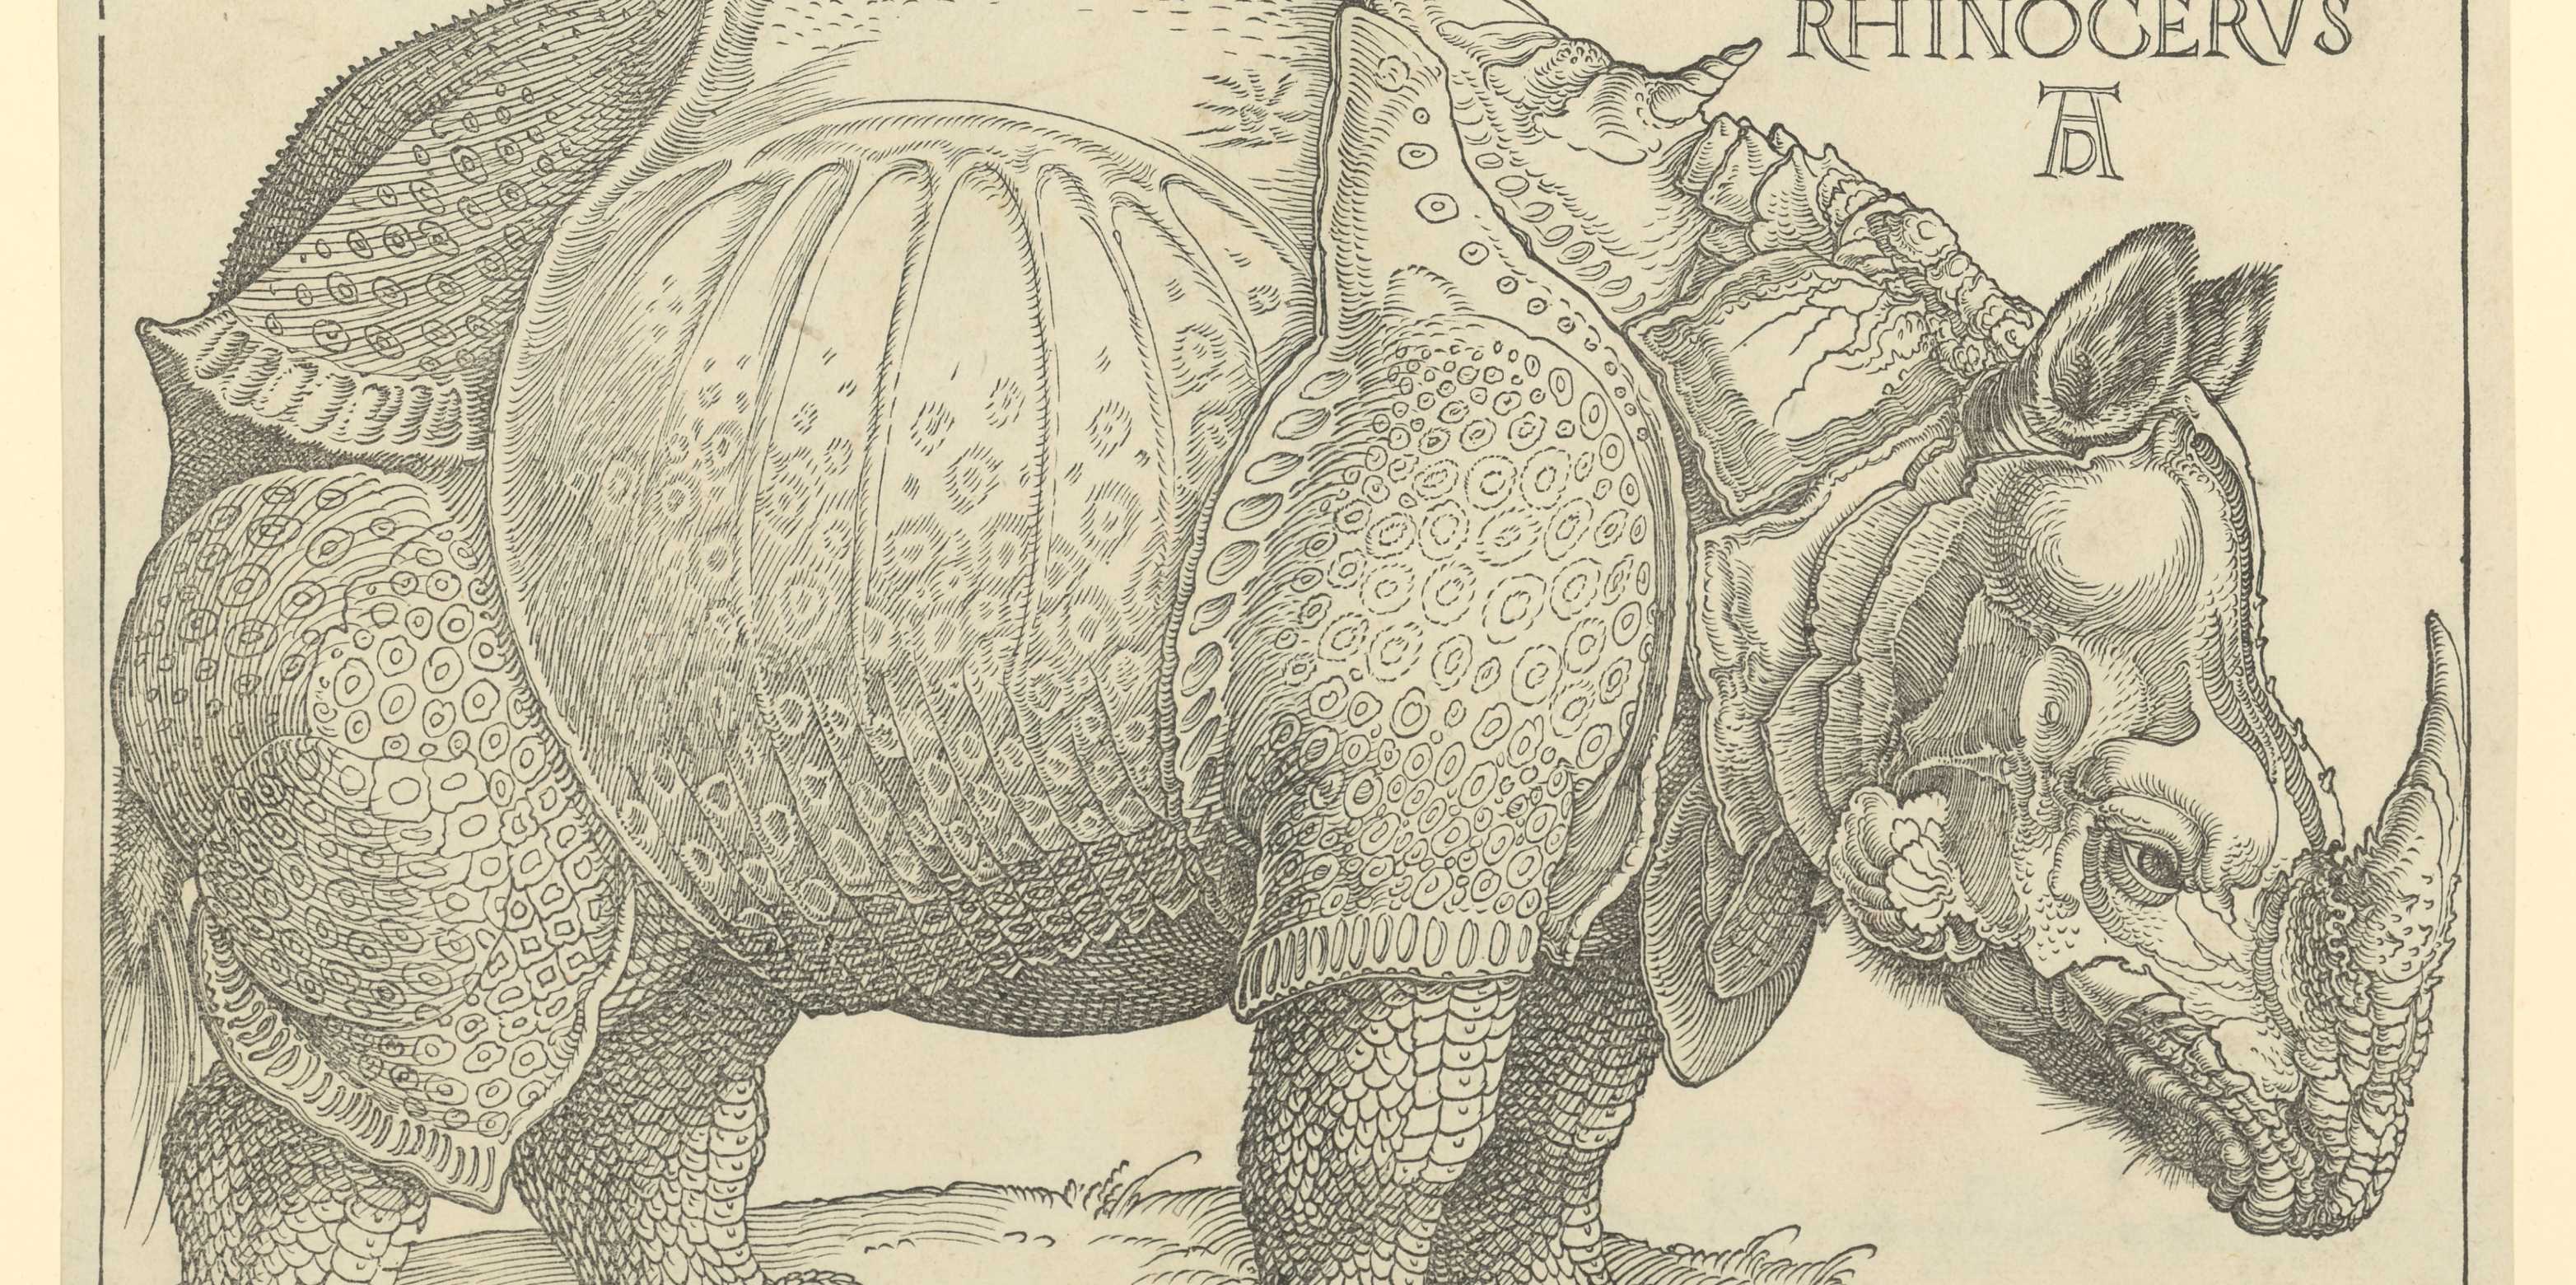 ALBRECHT DÜRER (1471–1528) Rhinocerus, 1515 Holzschnitt und Typendruck, 24,3 × 30,8 cm ETH-Bibliothek Zürich, Graphische Sammlung / D 13000 / Public Domain Mark 1.0